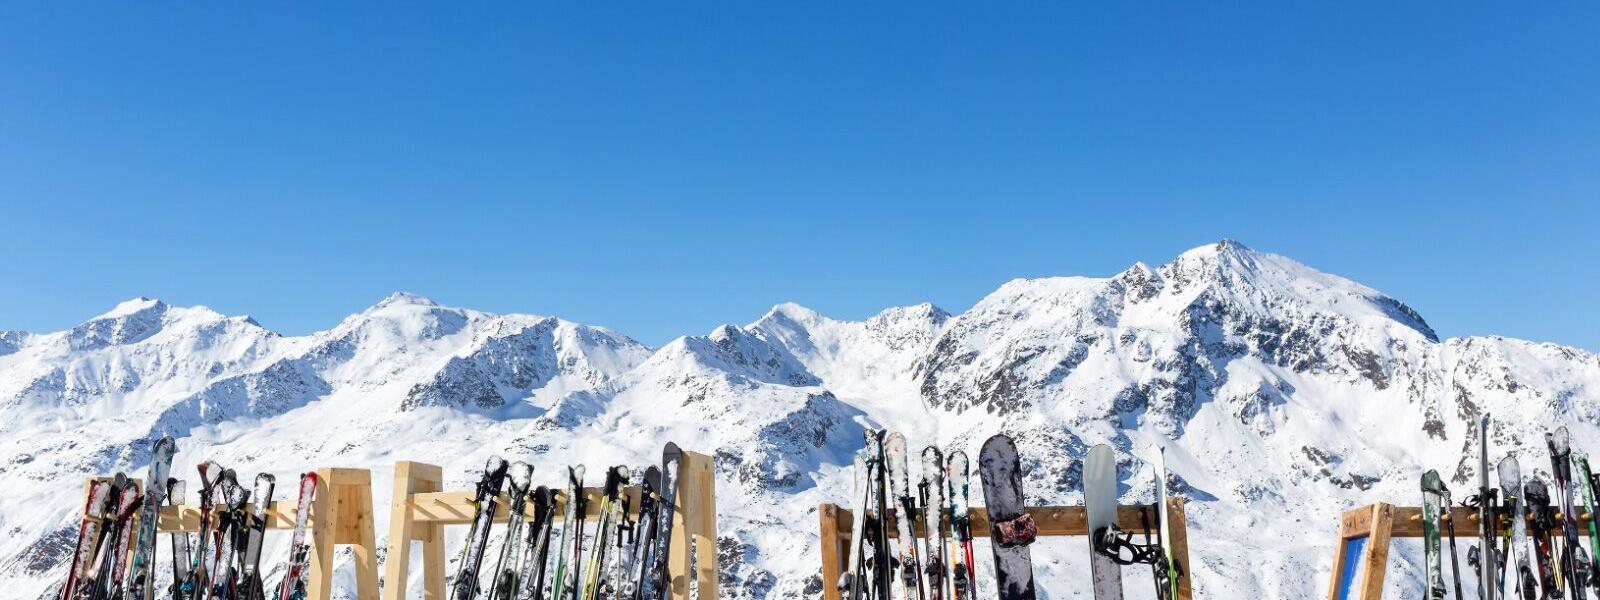 Ötztal: Skier und Snowboards auf der Piste mit Ötztaler Alpen im Hintergrund.